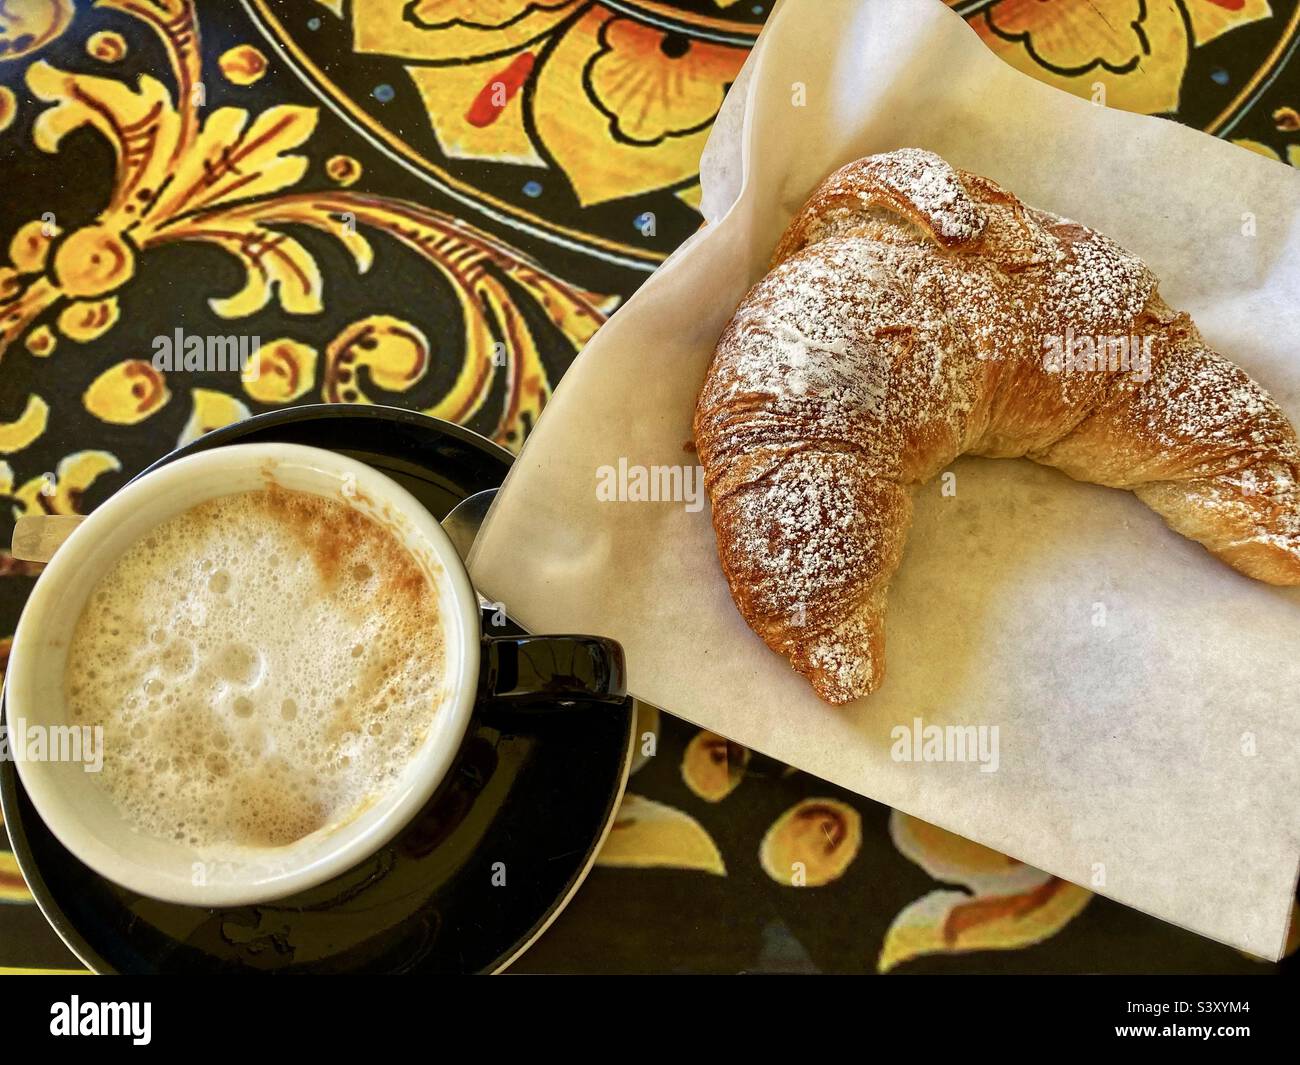 Italian breakfast in Sicily… cappuccino and cornetto or croissant Stock Photo